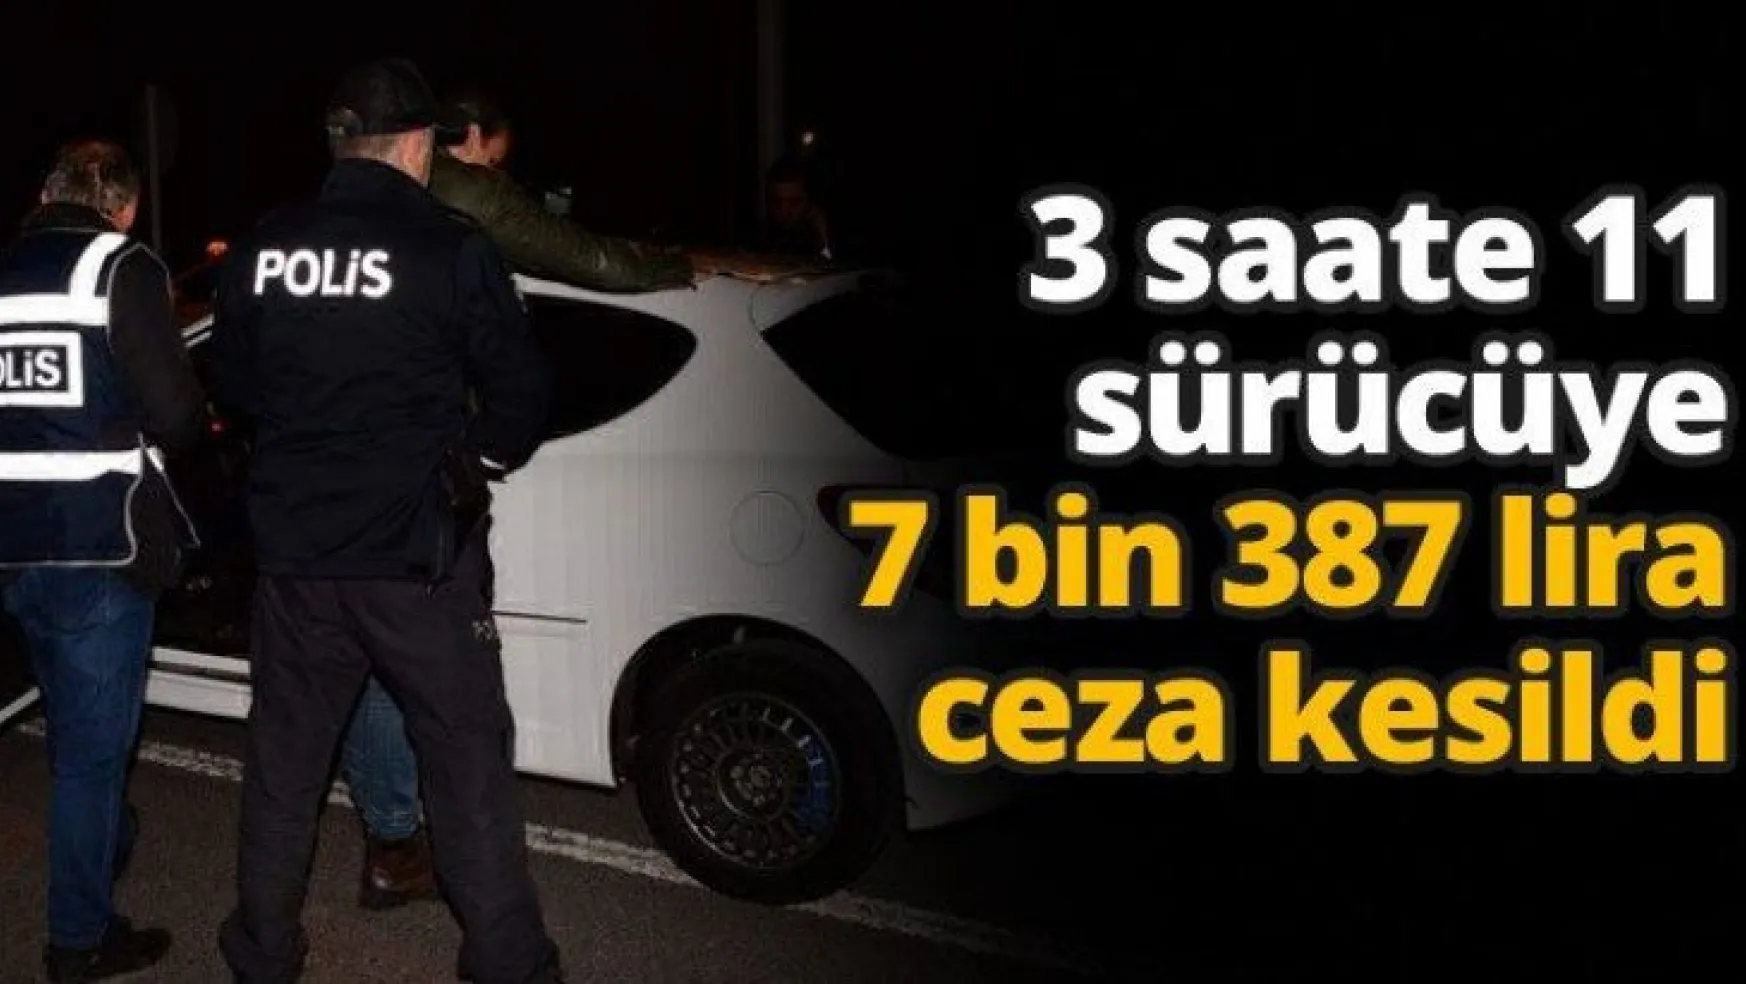 3 saate 11 sürücüye 7 bin 387 lira ceza kesildi